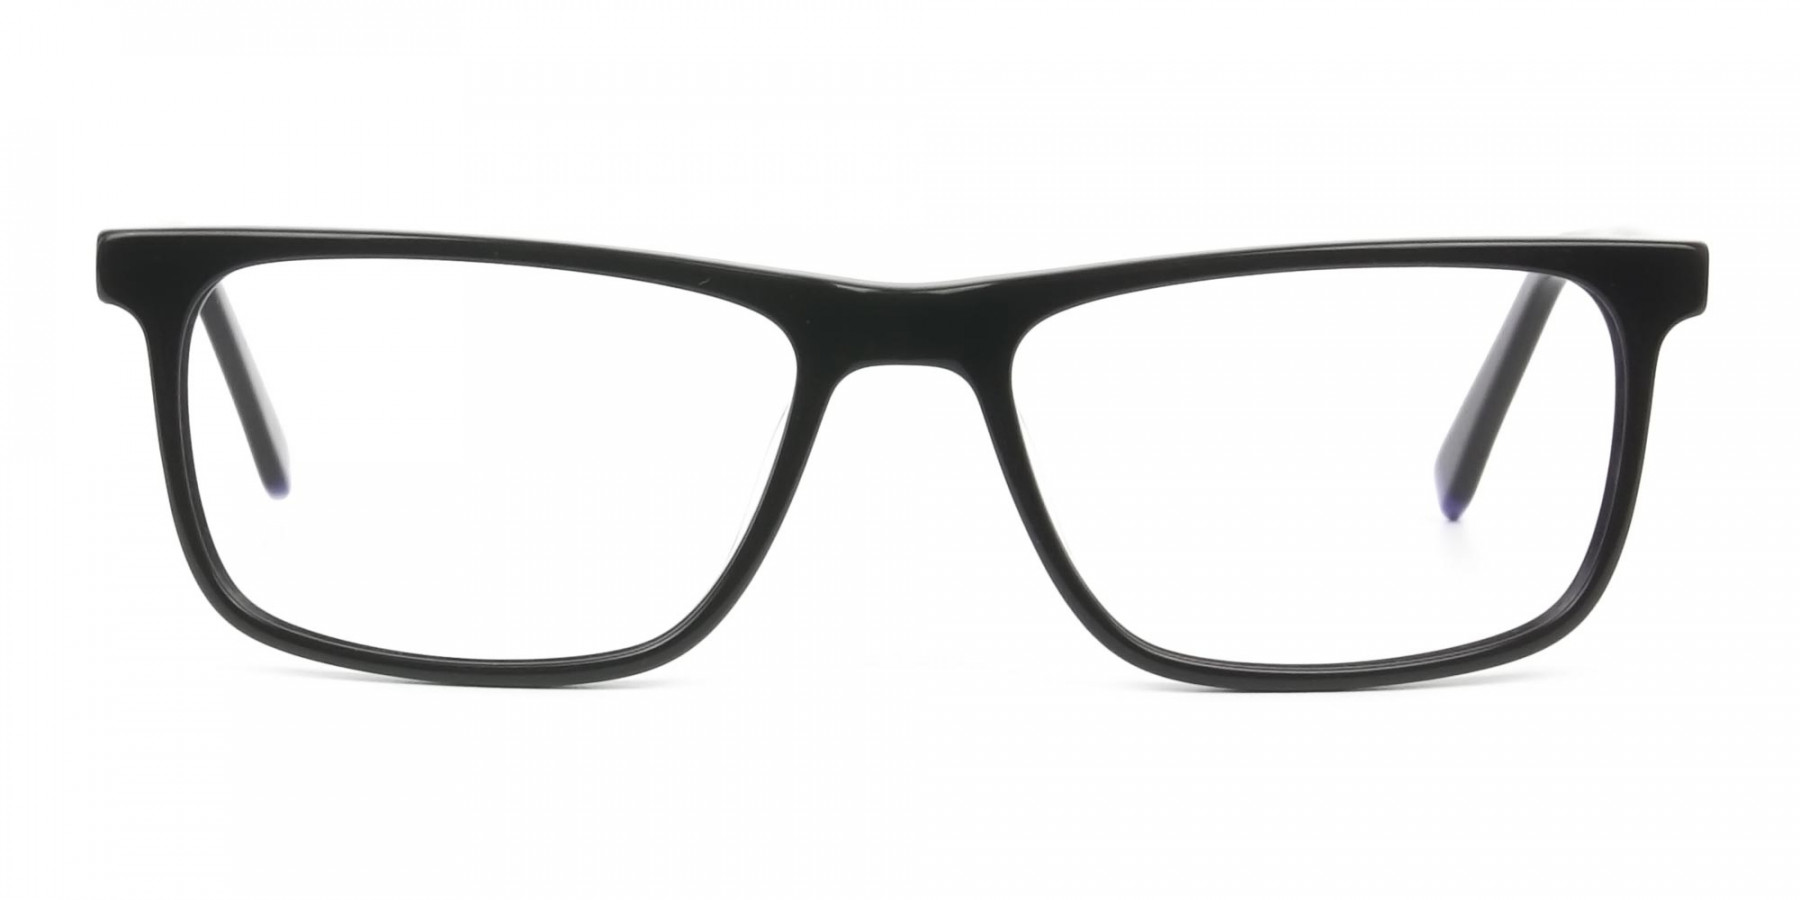 Black & Blue Temple Tips Glasses in Rectangular - 1